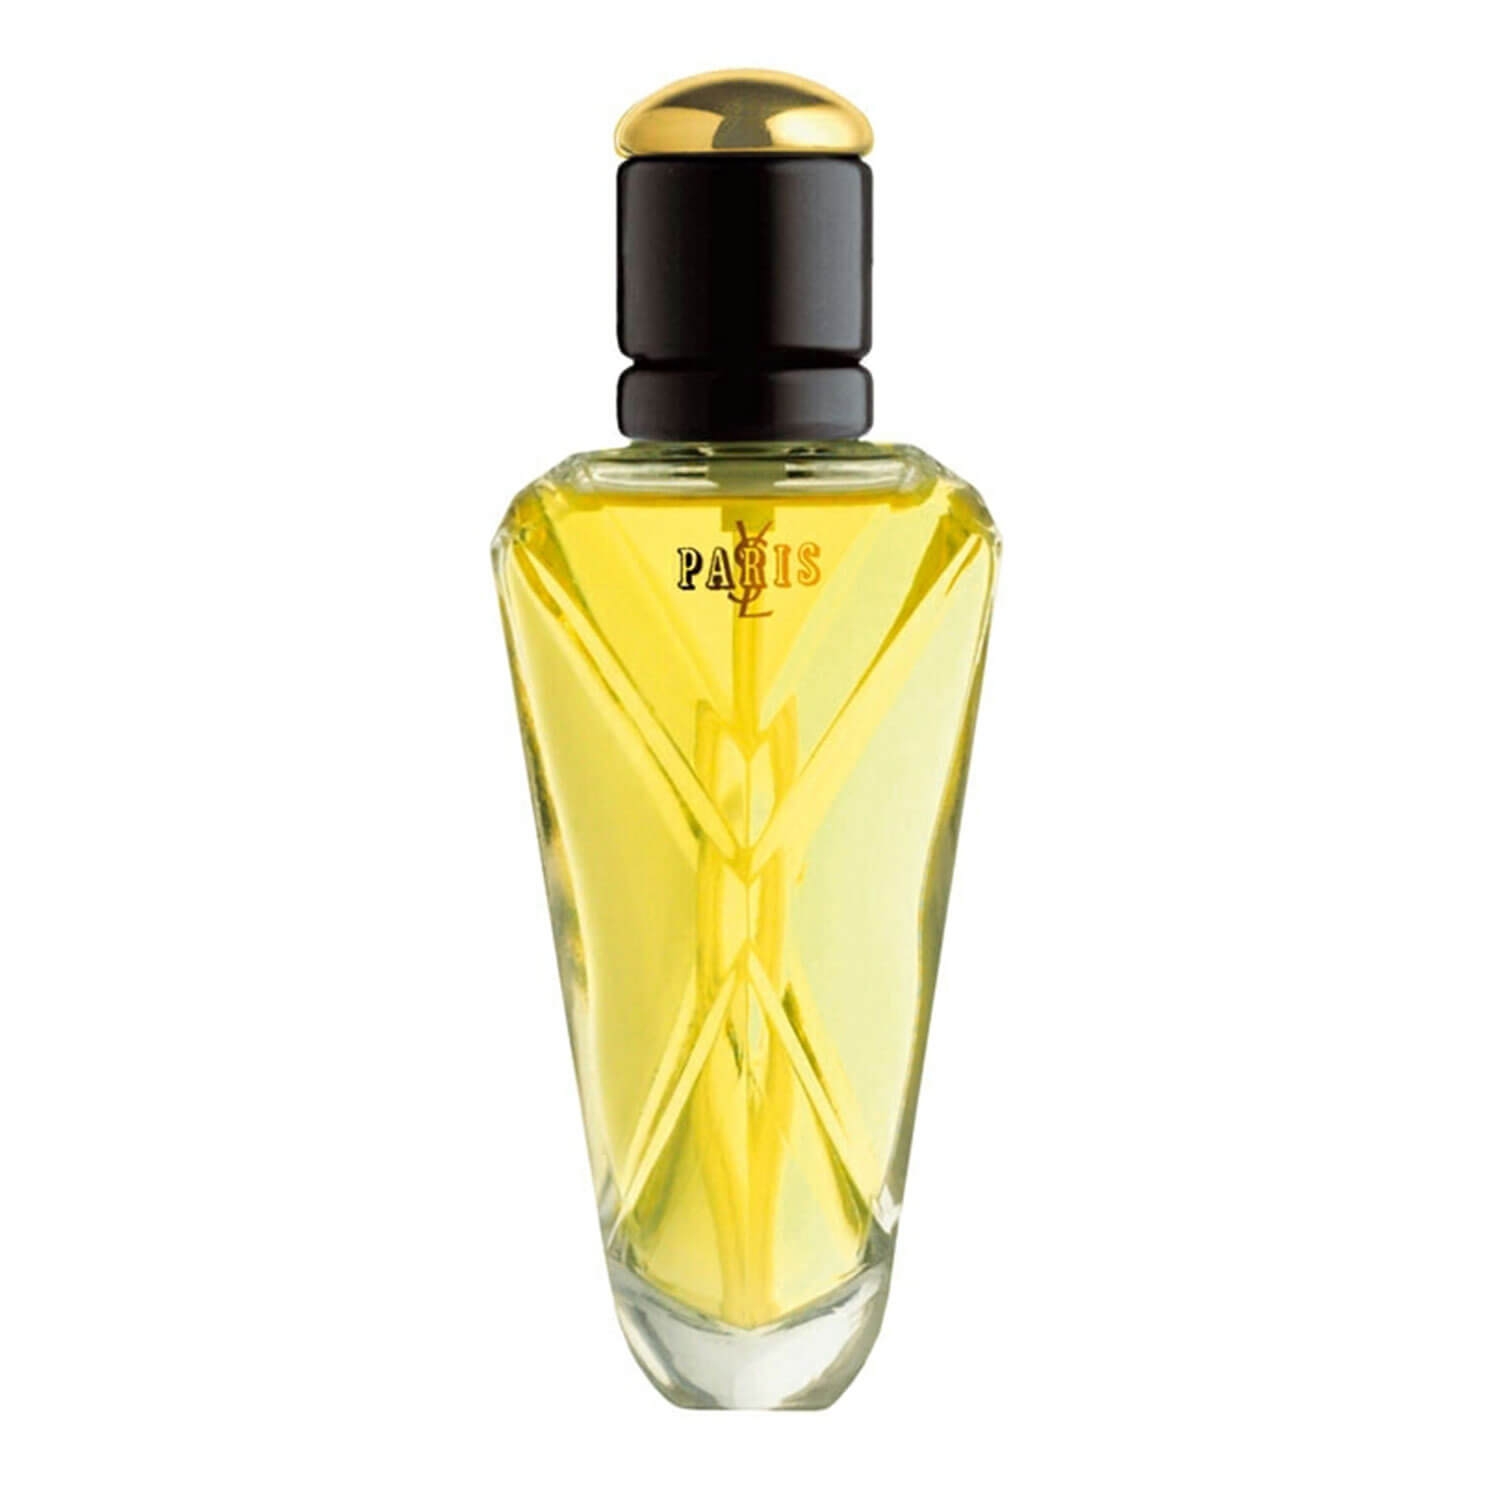 Product image from YSL Paris - Eau de Parfum